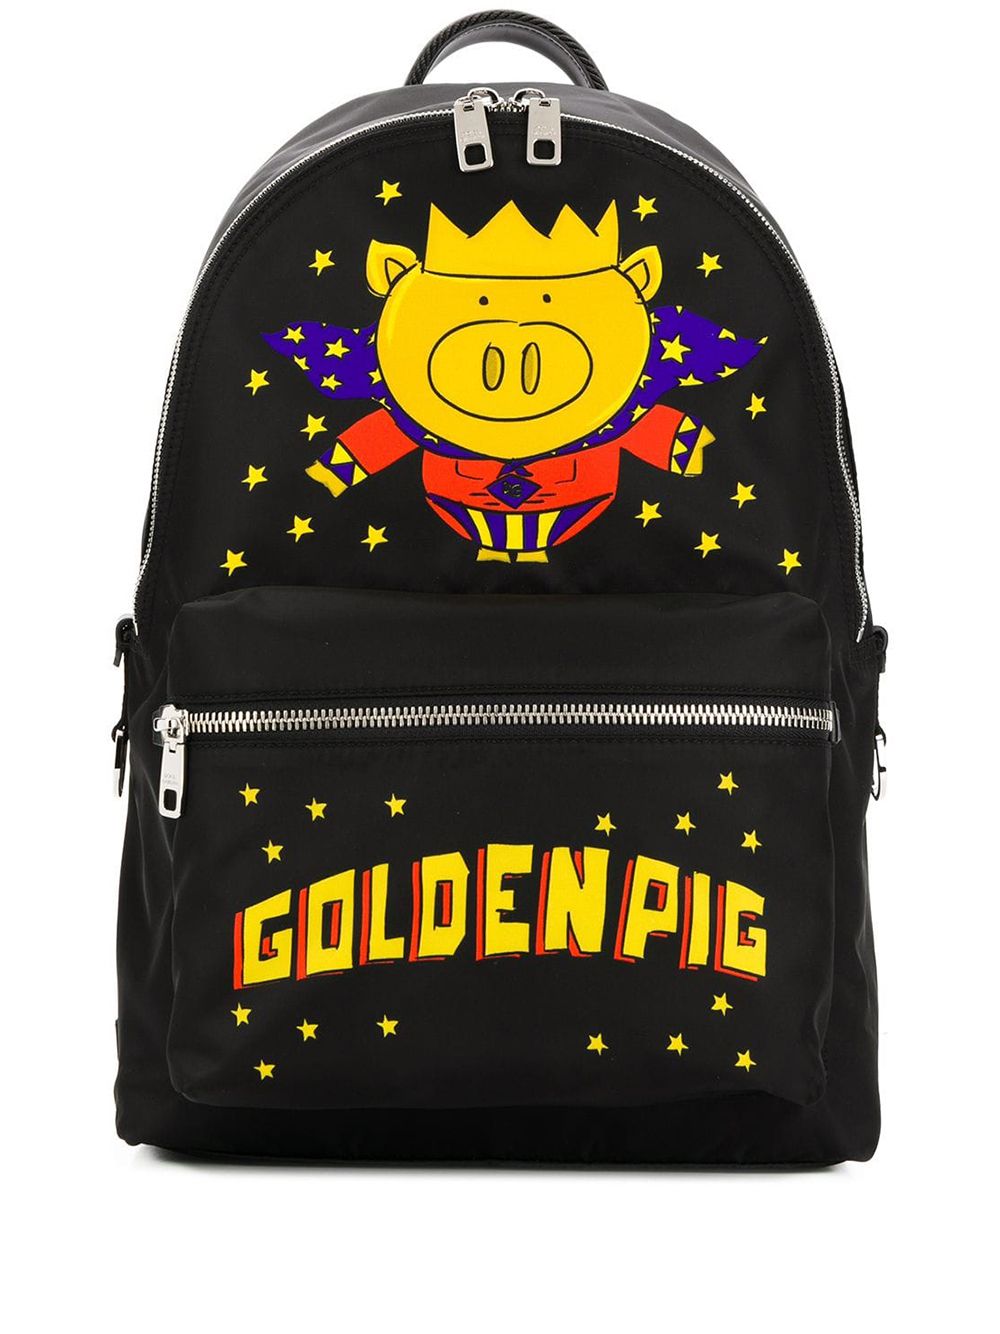 фото Dolce & Gabbana рюкзак Golden Pig